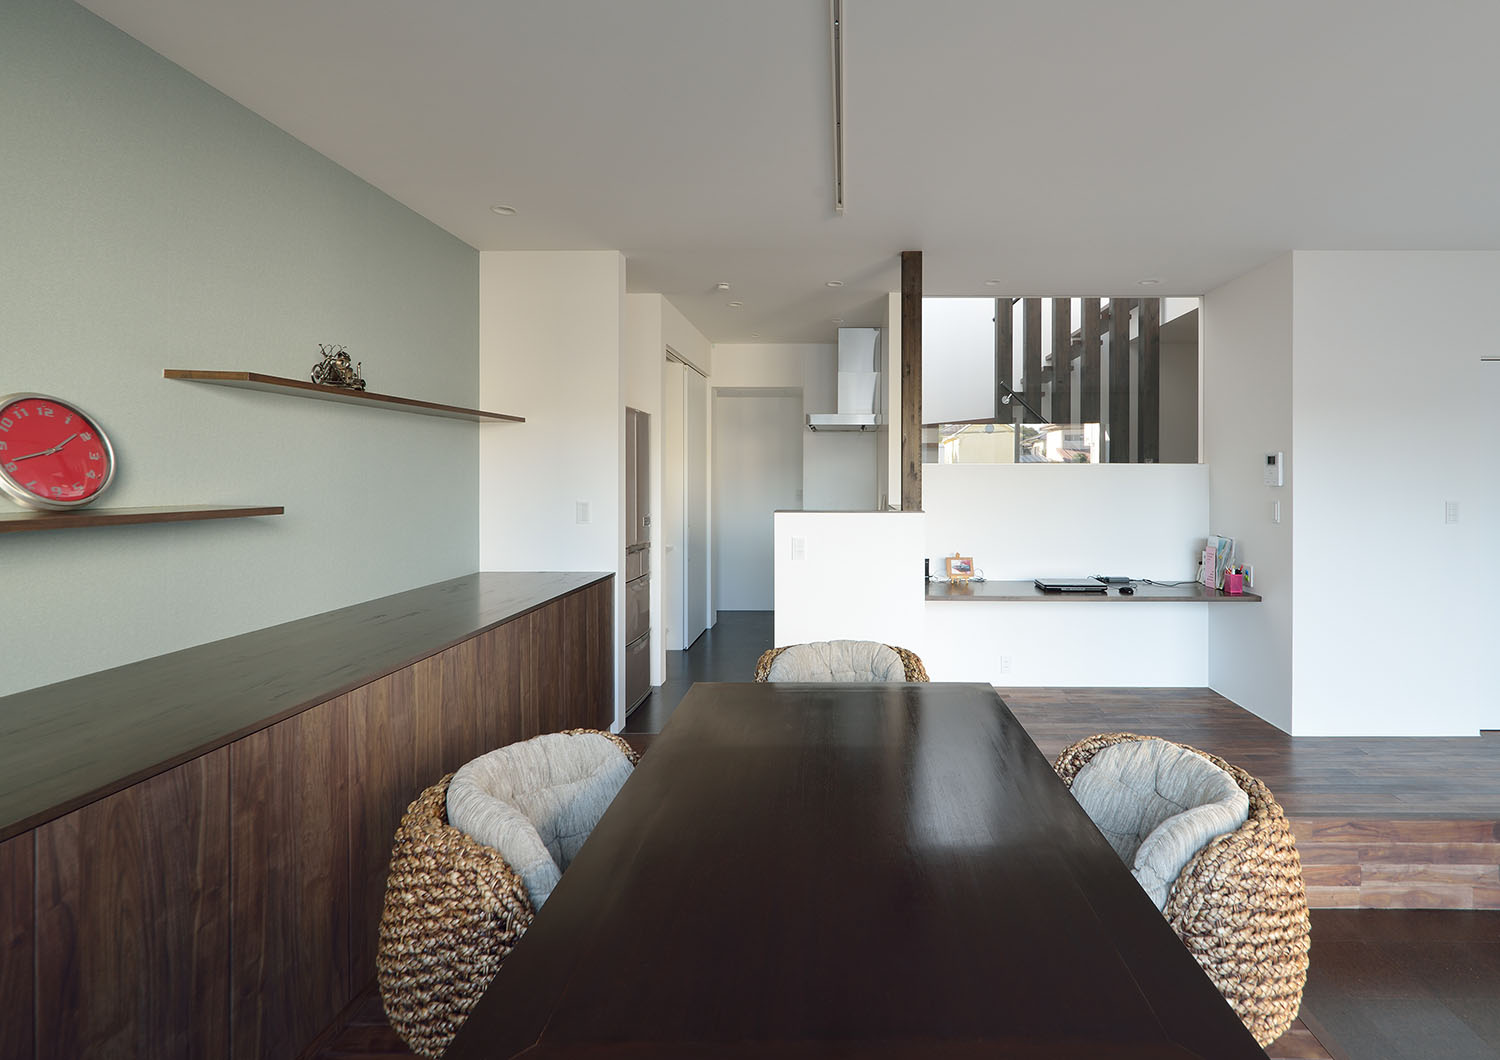 ダイニングテーブルと棚のデザインが統一されているLDK・デザイン住宅